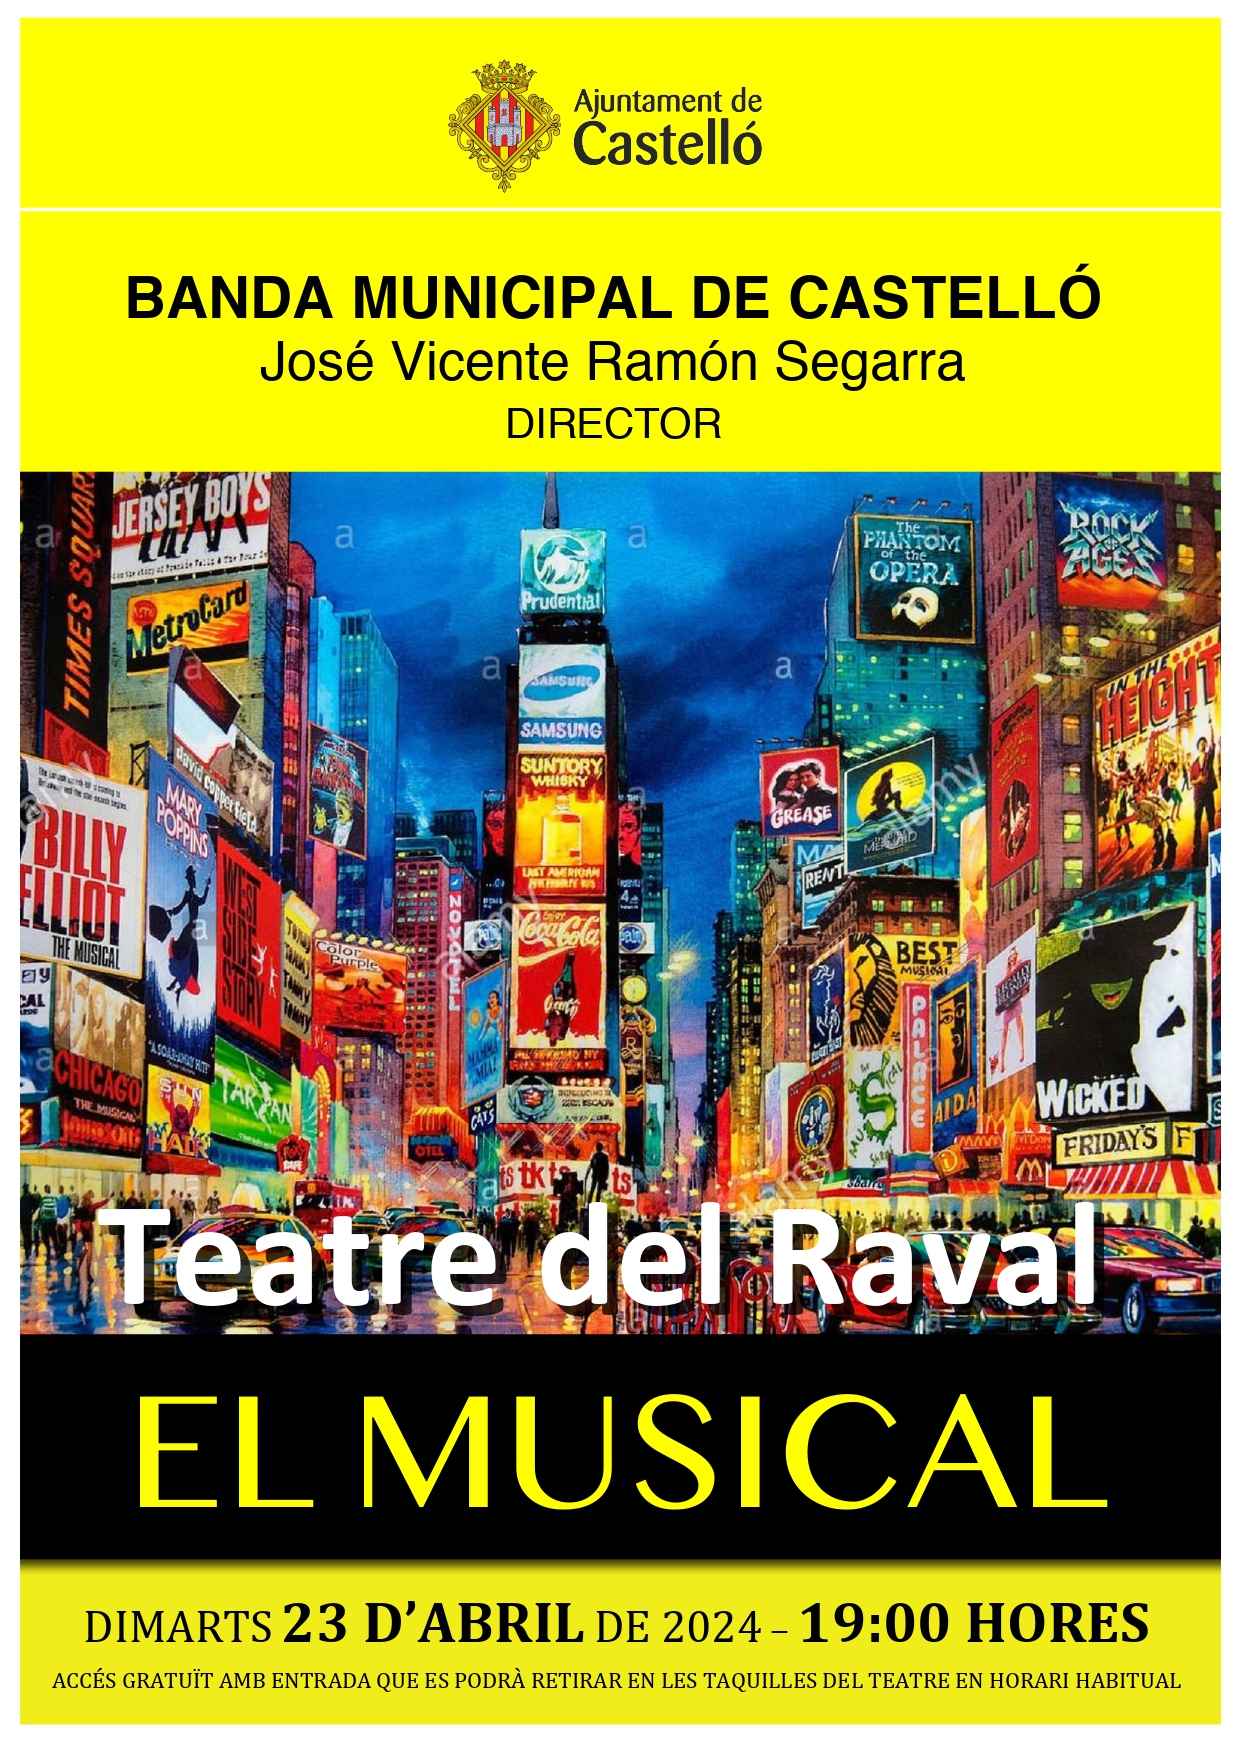 Concert: El Musical. Banda Municipal de Castelló